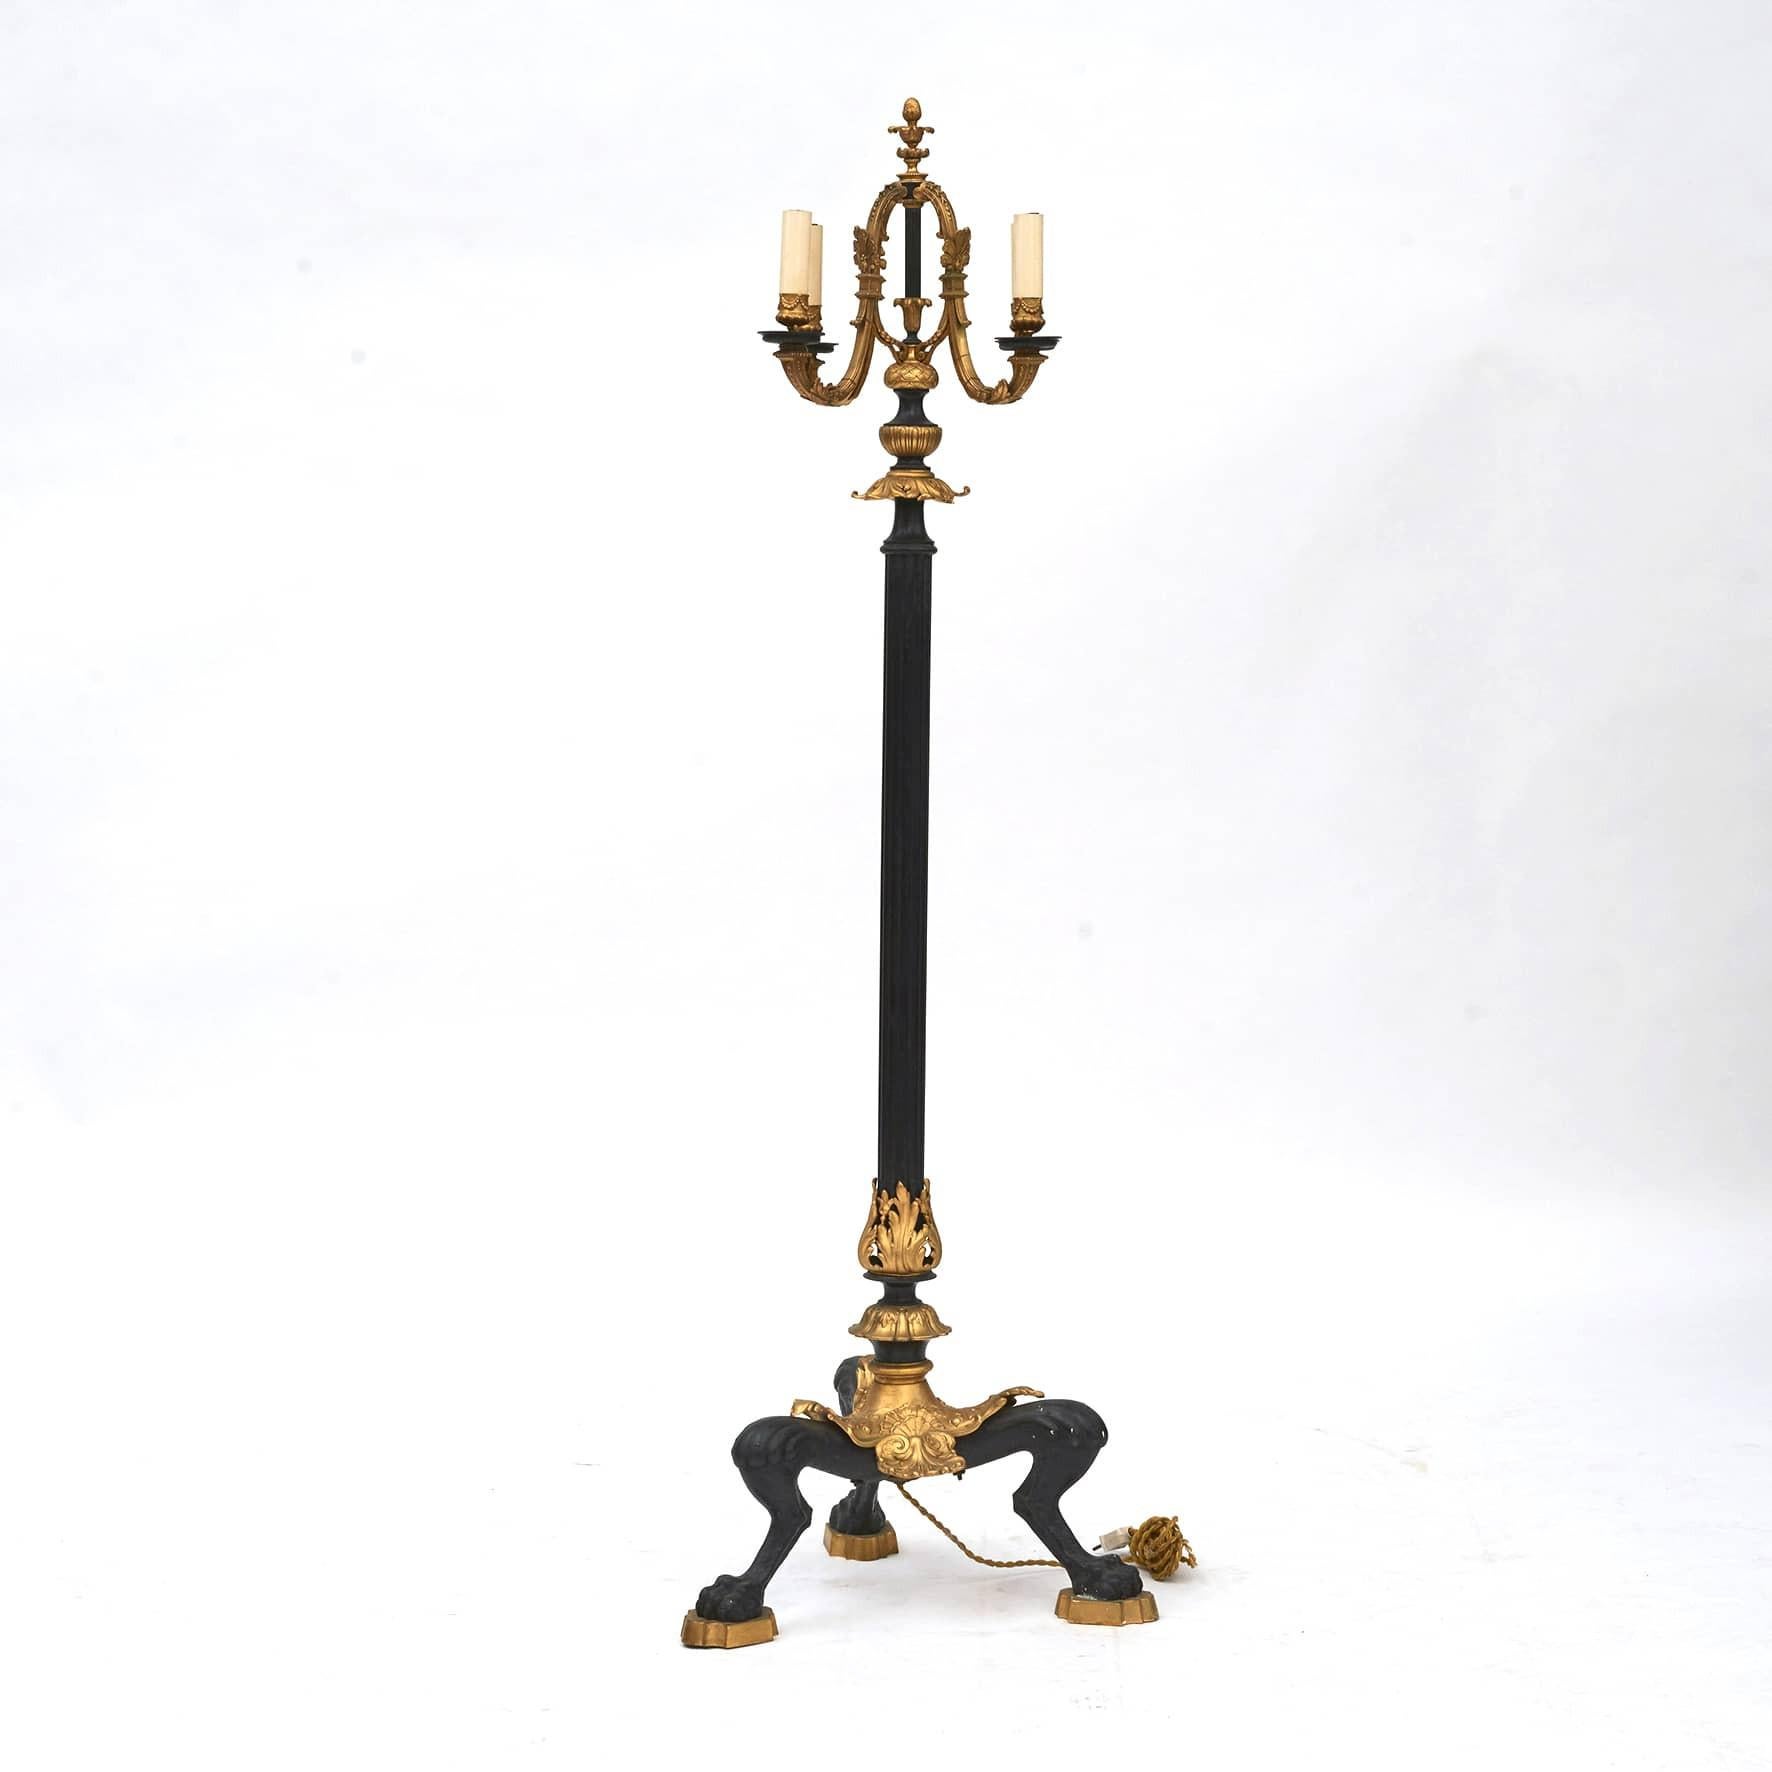 Französische Stehlampe im Louis-XVI-Stil (19. Jahrhundert).
Vergoldete und schwarz patinierte Bronze. 4 Kandelaberarme, später verdrahtet. Auf einem dreibeinigen Sockel ruhend, wobei jedes Bein in Tatzenfüßen endet.
Durchgehend feine